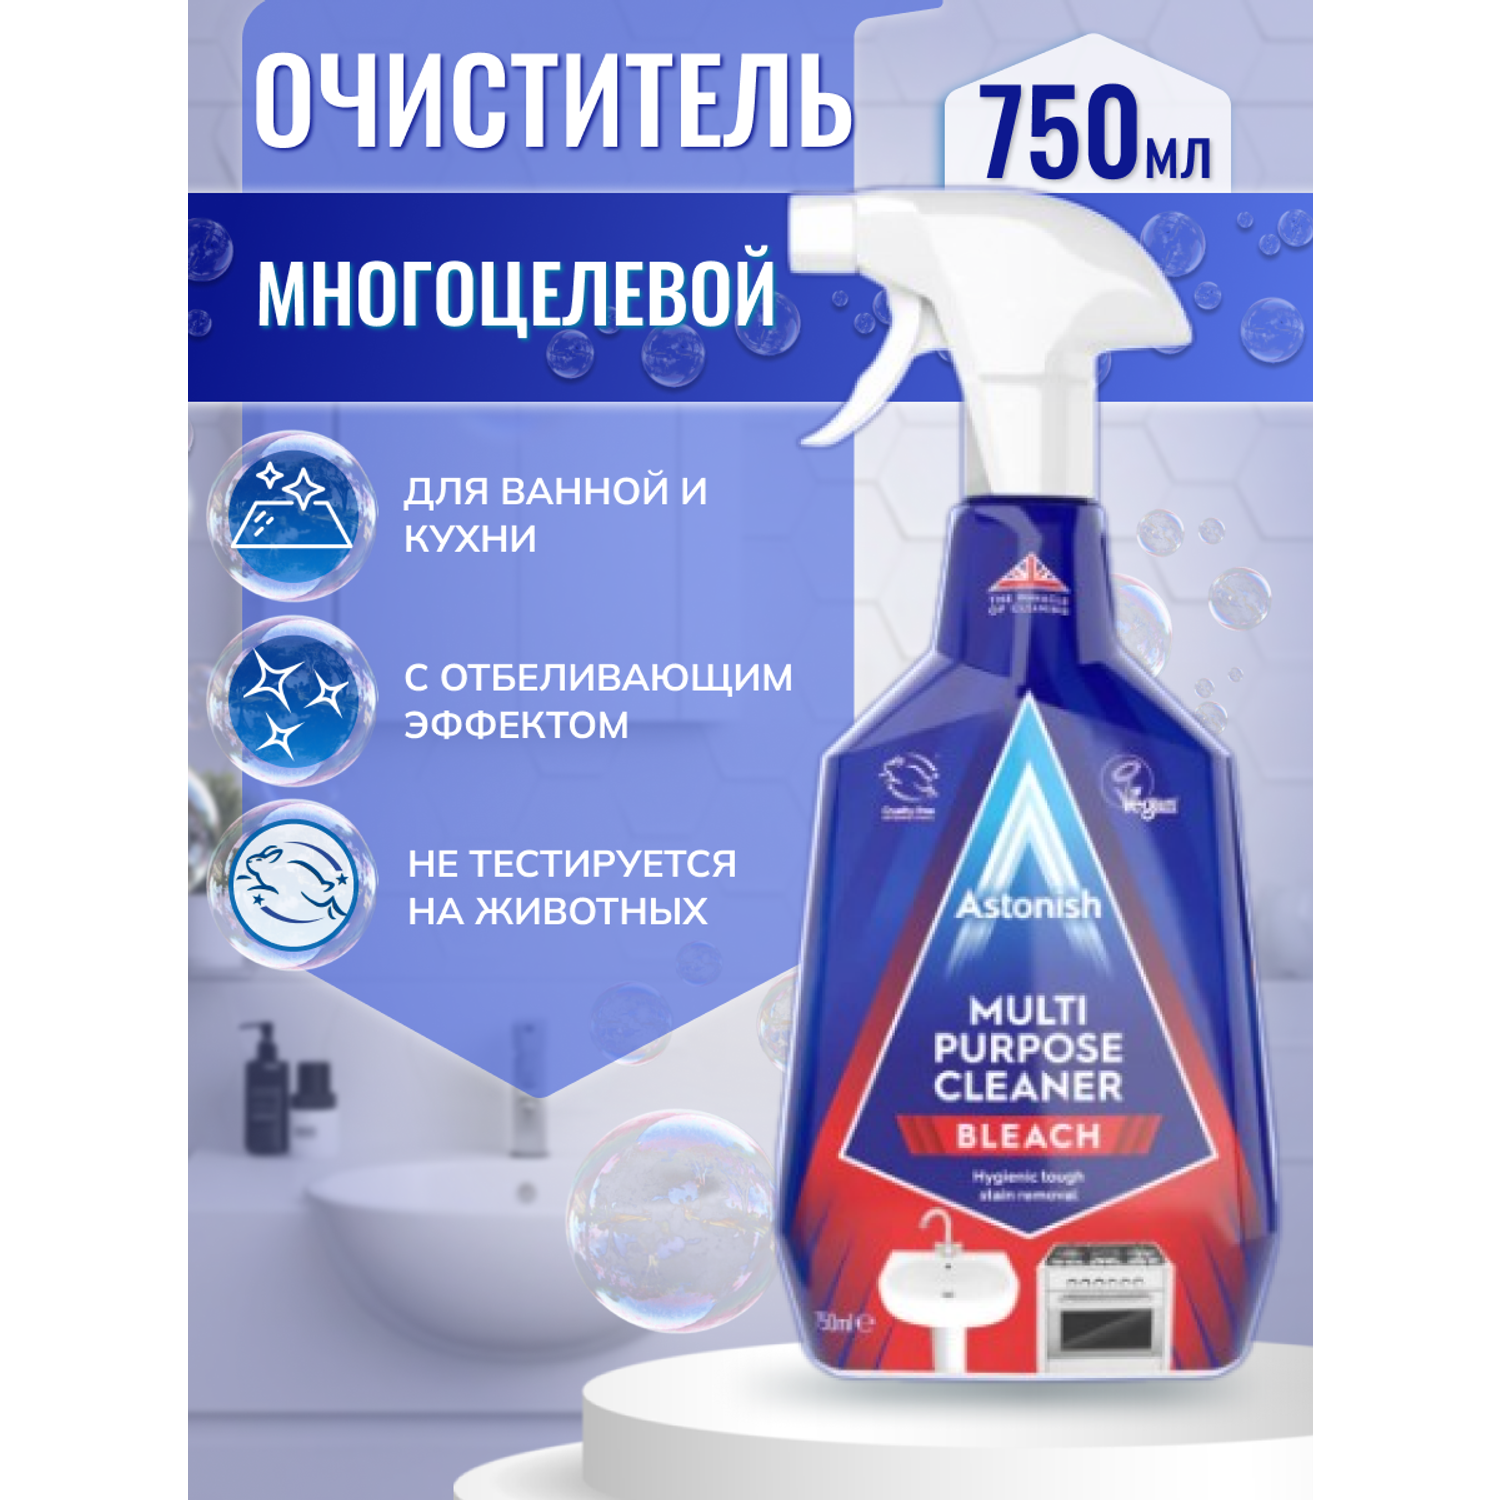 Многоцелевое чистящее средство Astonish для ванной и кухни с отбеливающим эффектом Multi-Purpose Cleaner 750мл. - фото 2